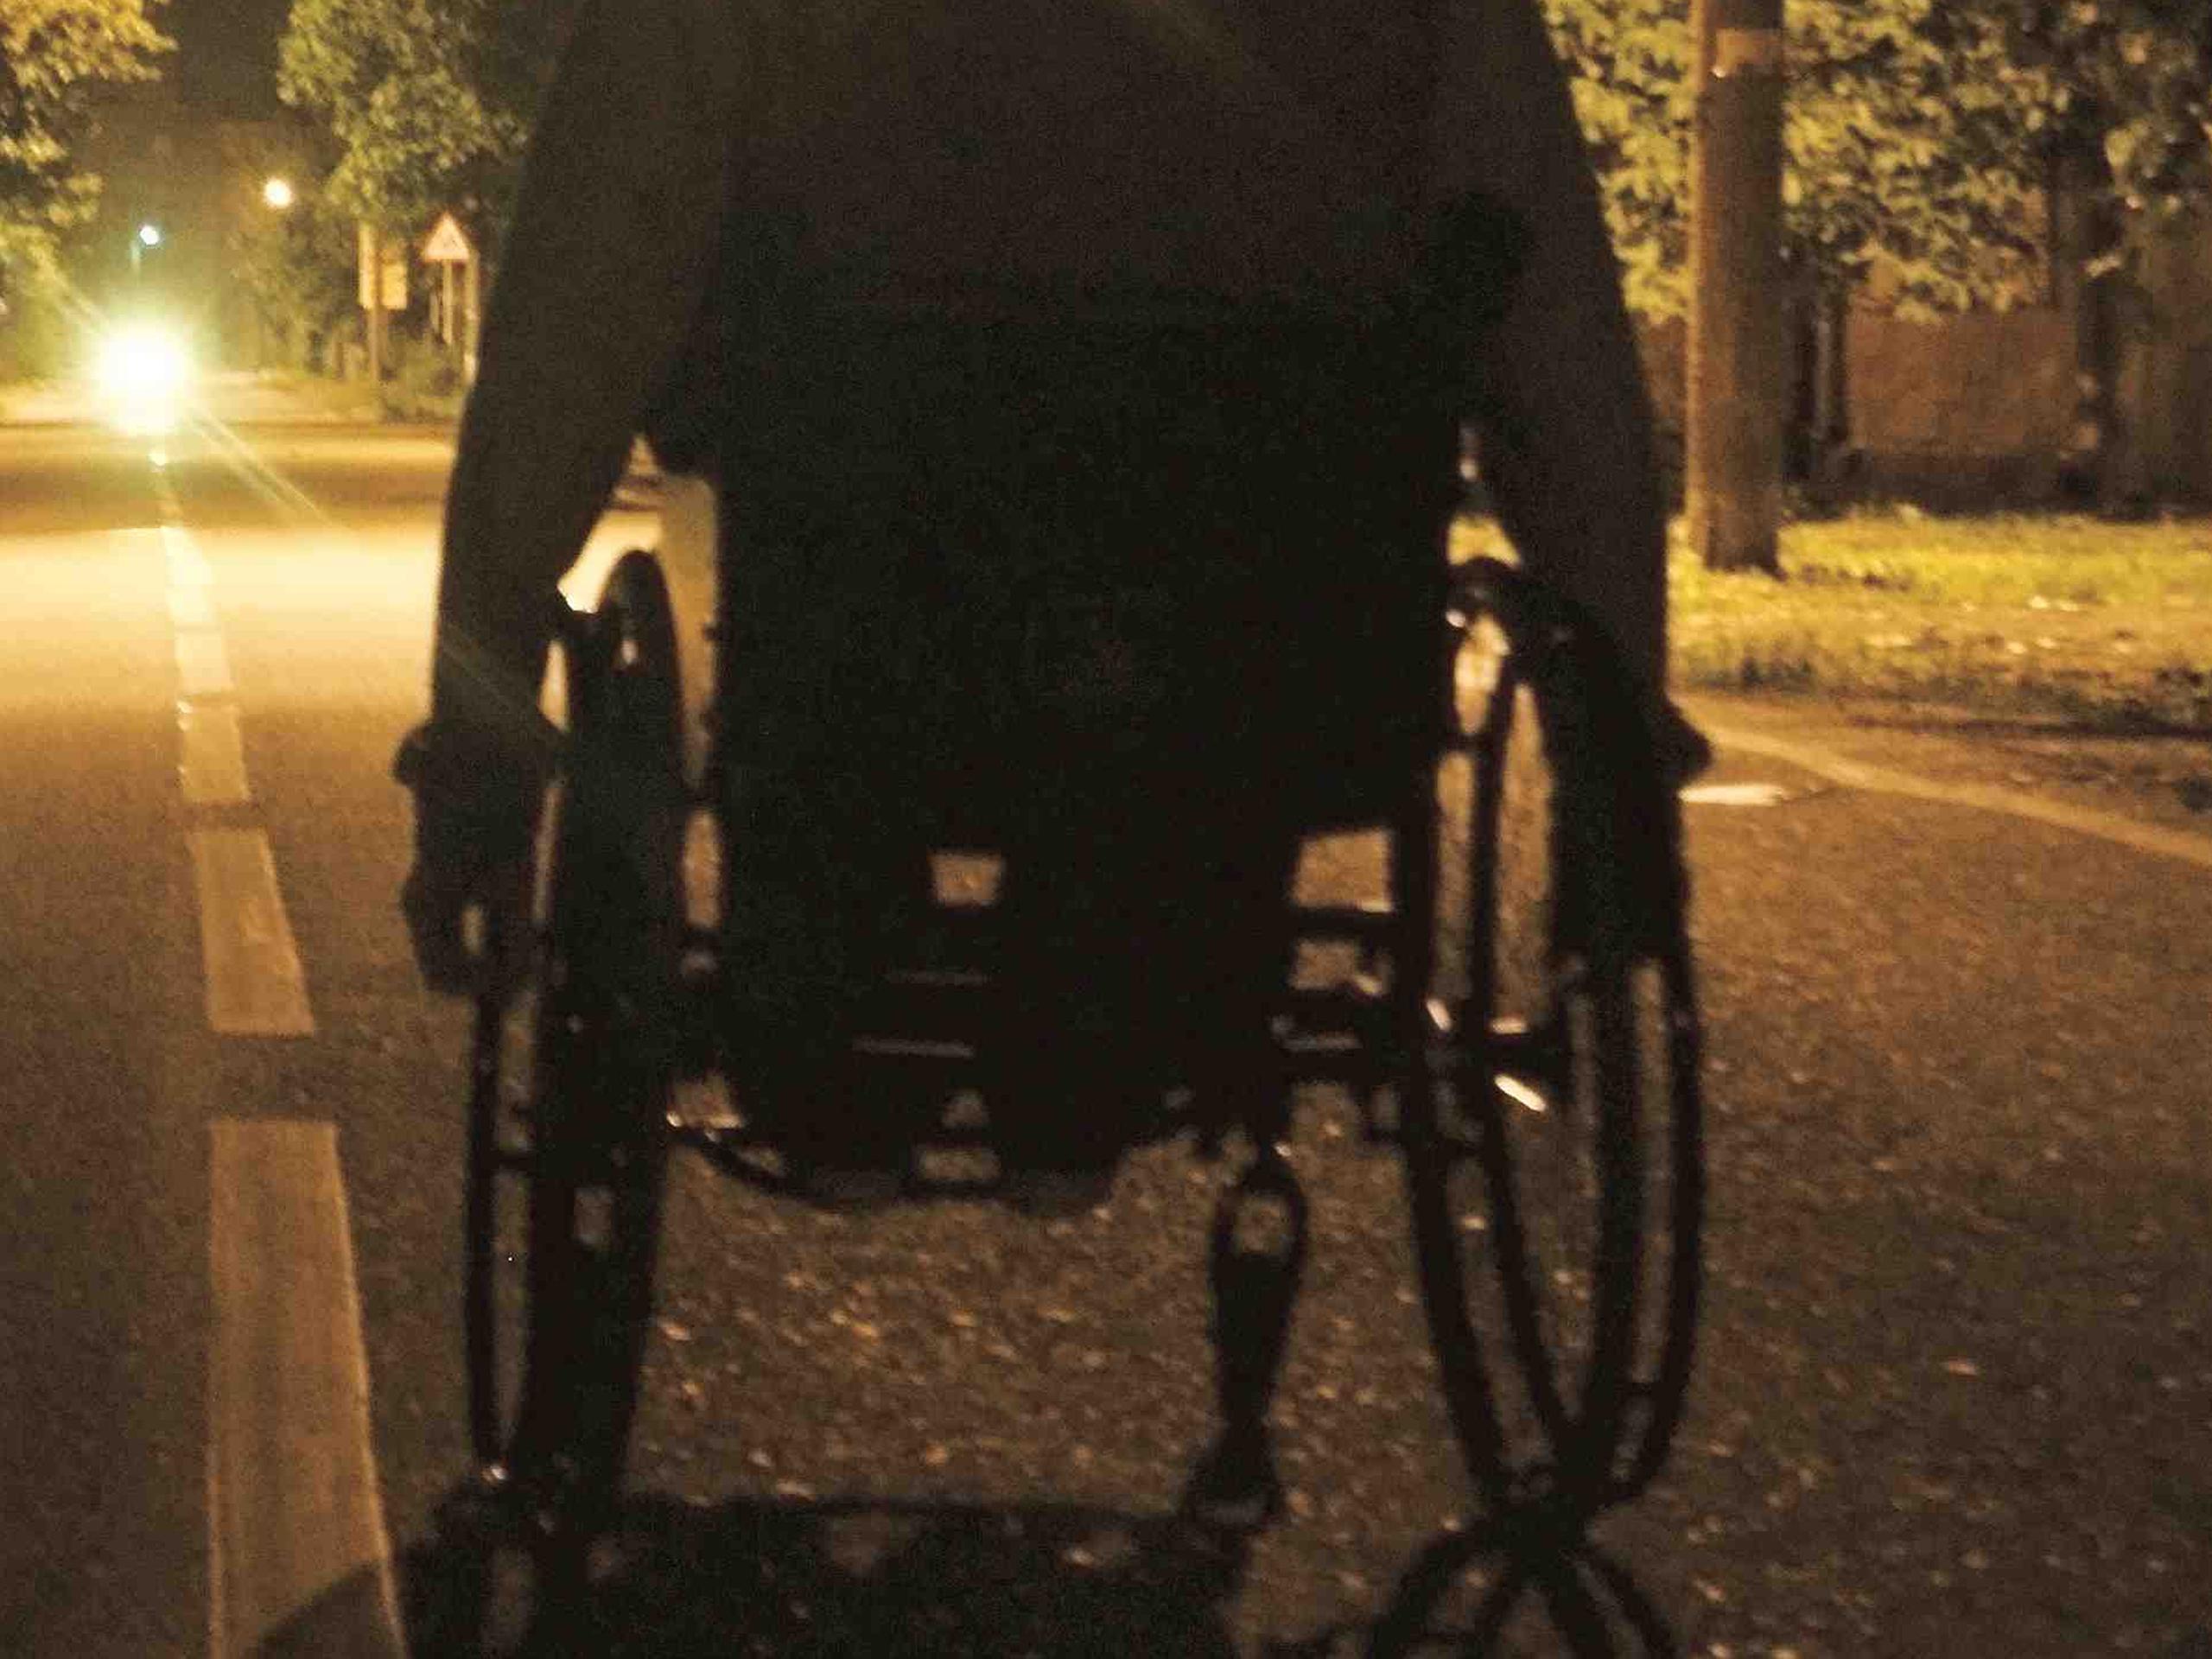 Colón Santiago, de 65 años y quien utiliza silla de rueda motorizada, apareció golpeado, con heridas abiertas en el rostro y tirado a orillas de una calle rural. (GFR Media)